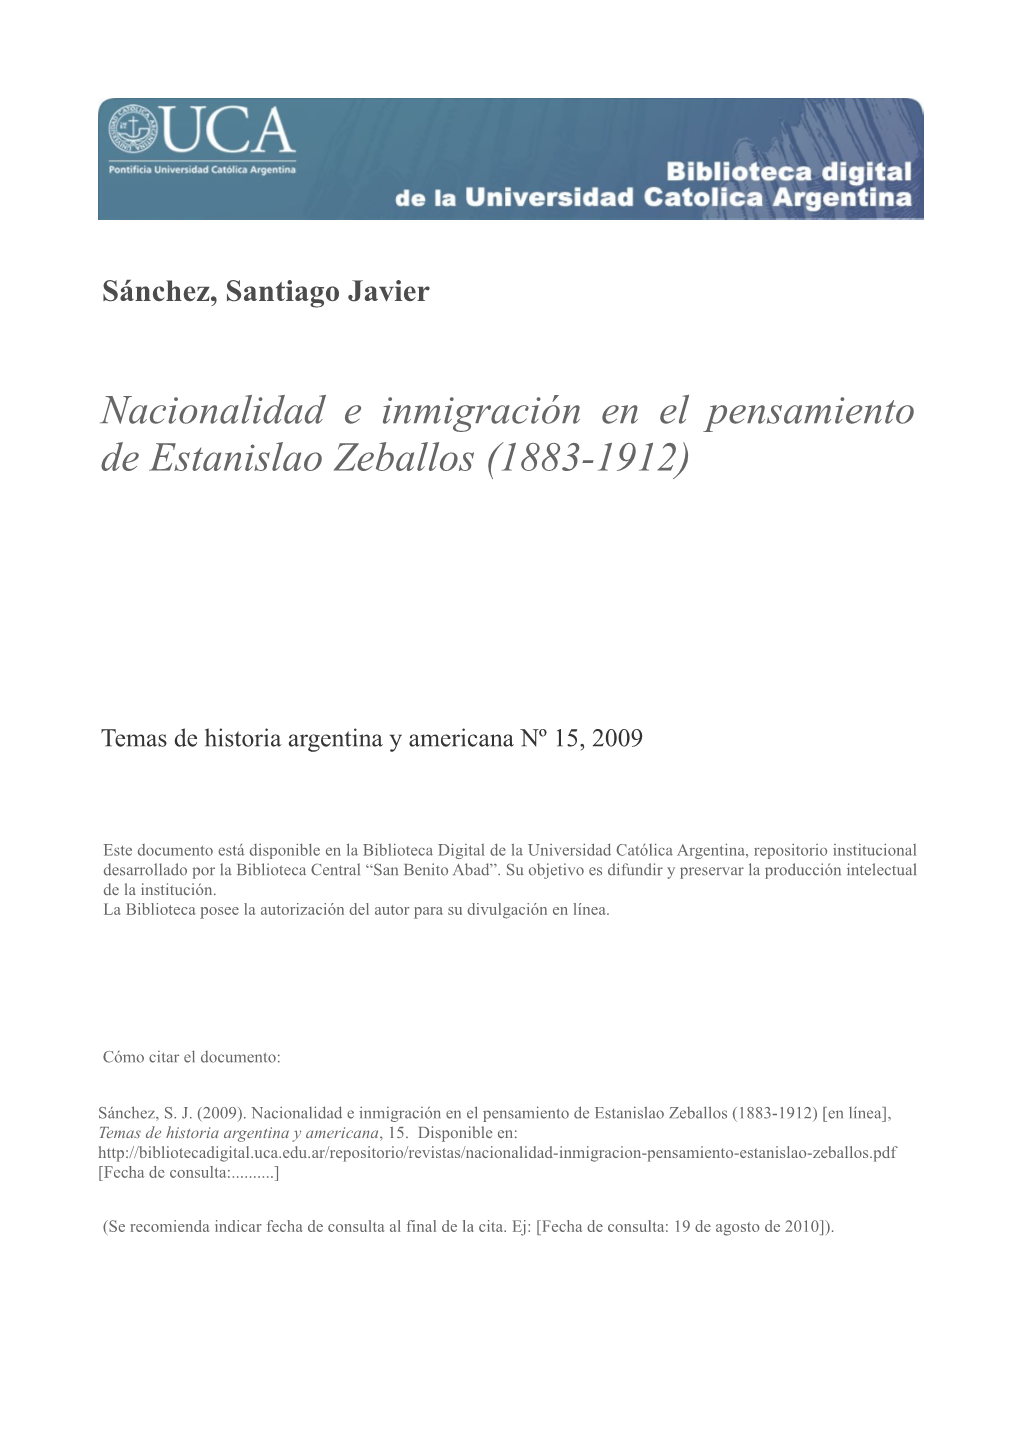 Nacionalidad E Inmigración En El Pensamiento De Estanislao Zeballos (1883-1912)